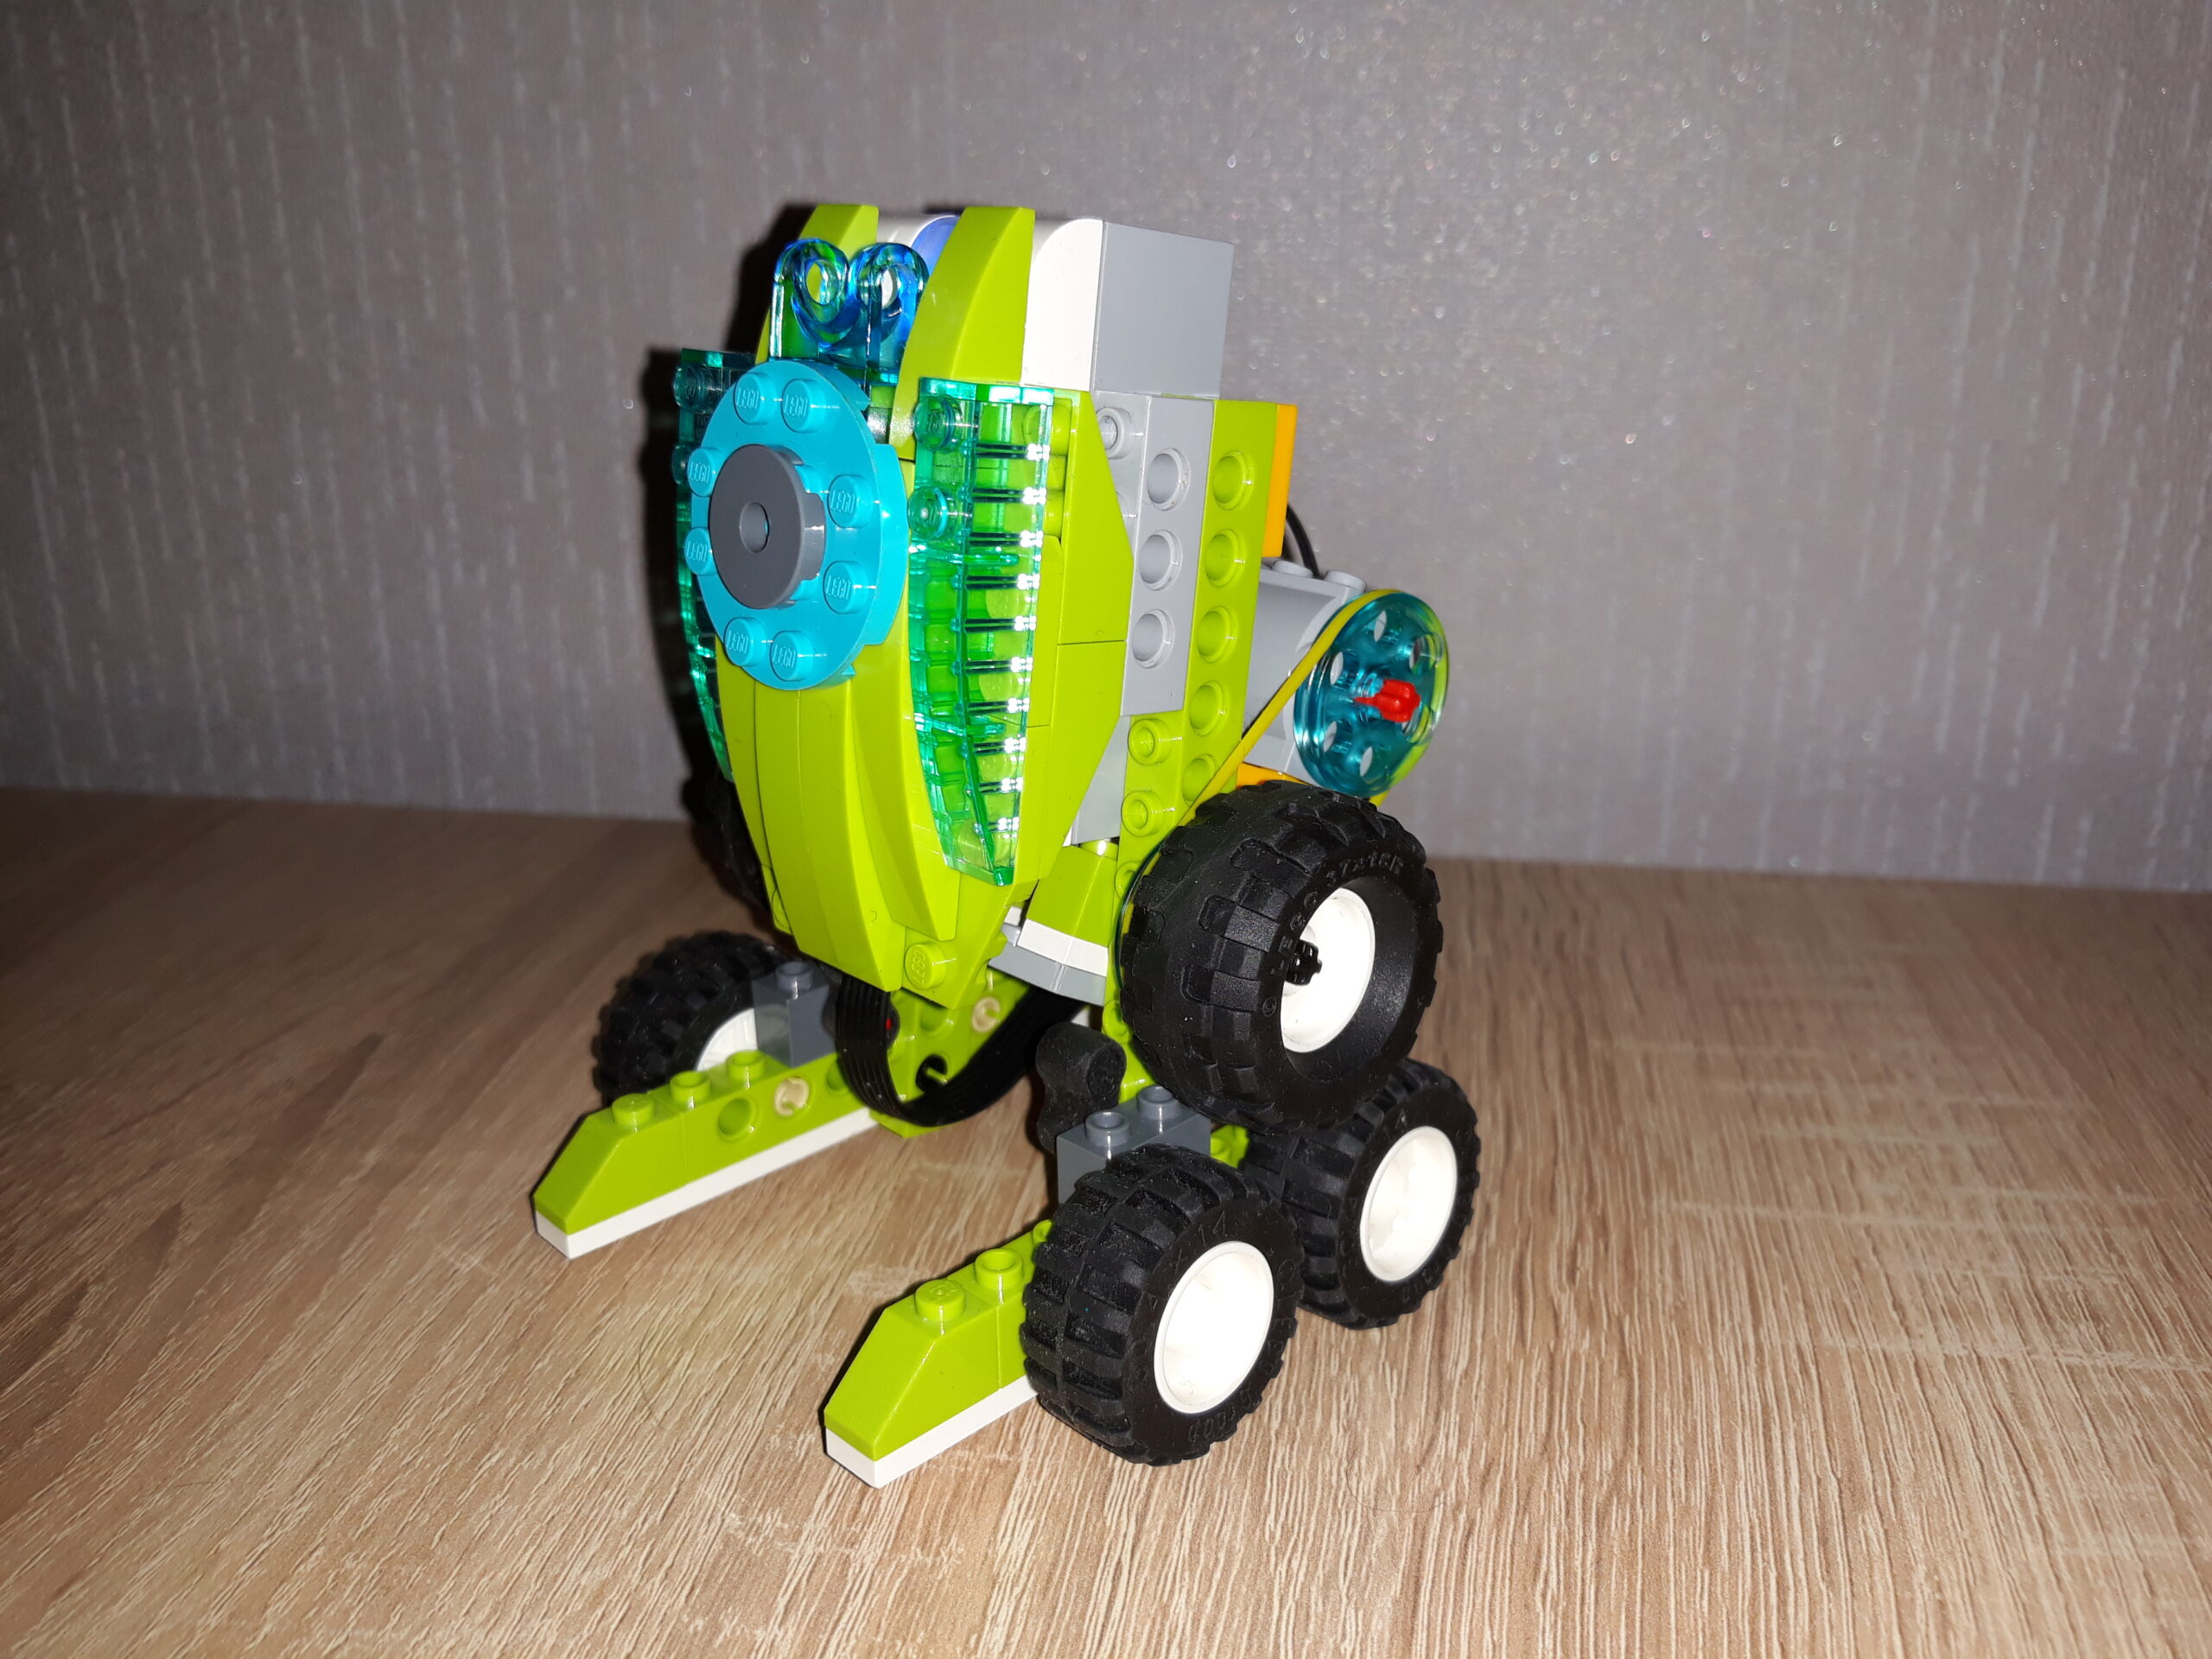 Скачать инструкцию по сборке из набора LEGO Education WeDo 2.0 Робот R2D2